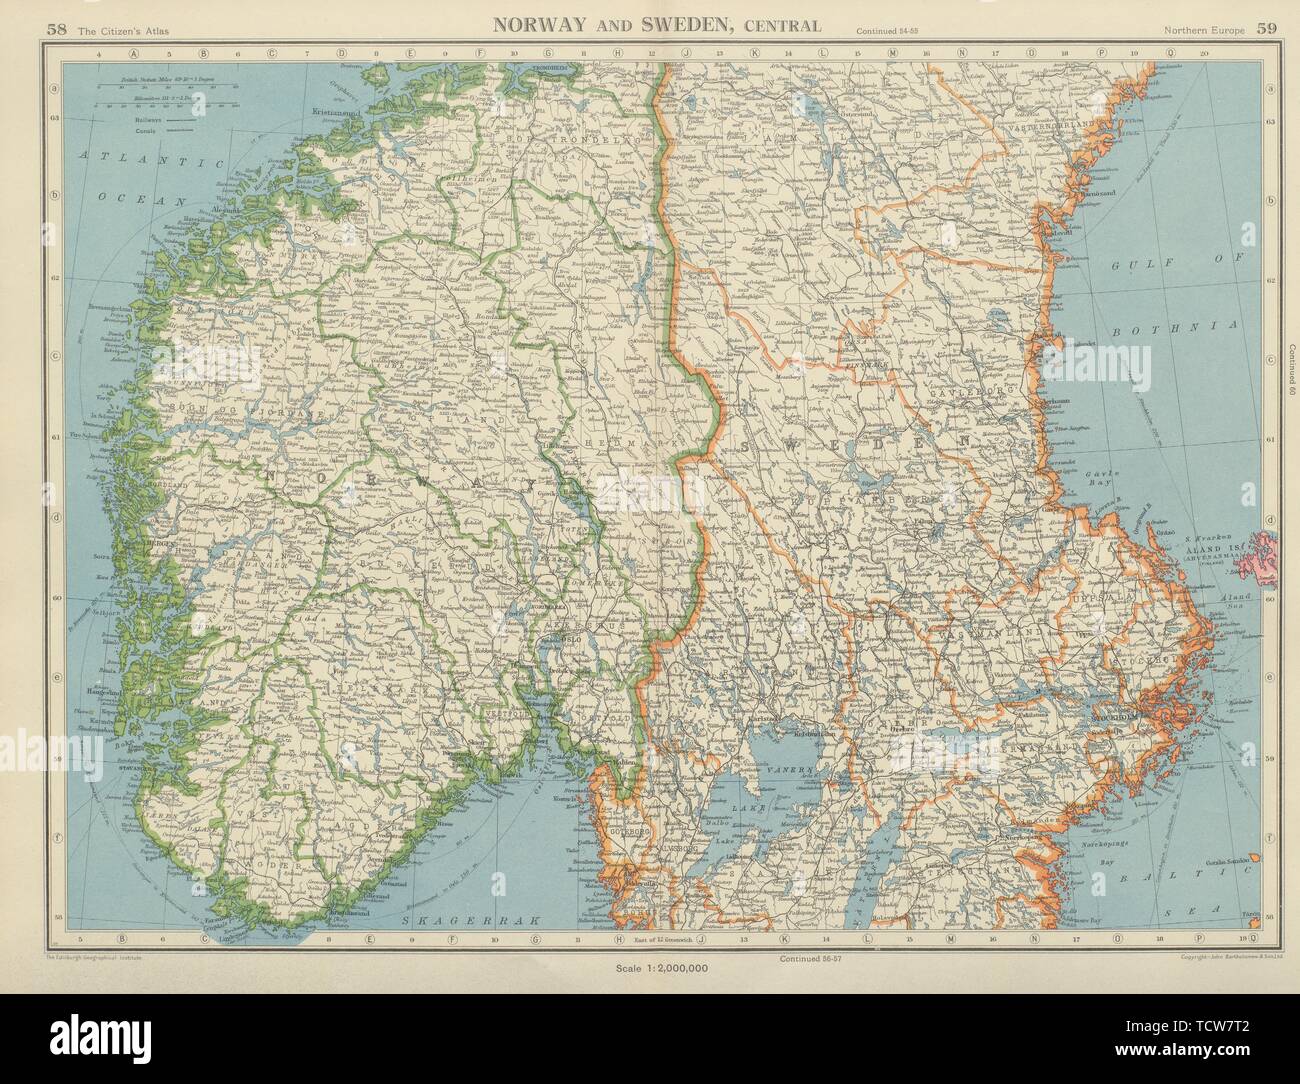 La Scandinavia. La Norvegia e la Svezia centrale. Le ferrovie. Bartolomeo 1947 mappa vecchia Foto Stock